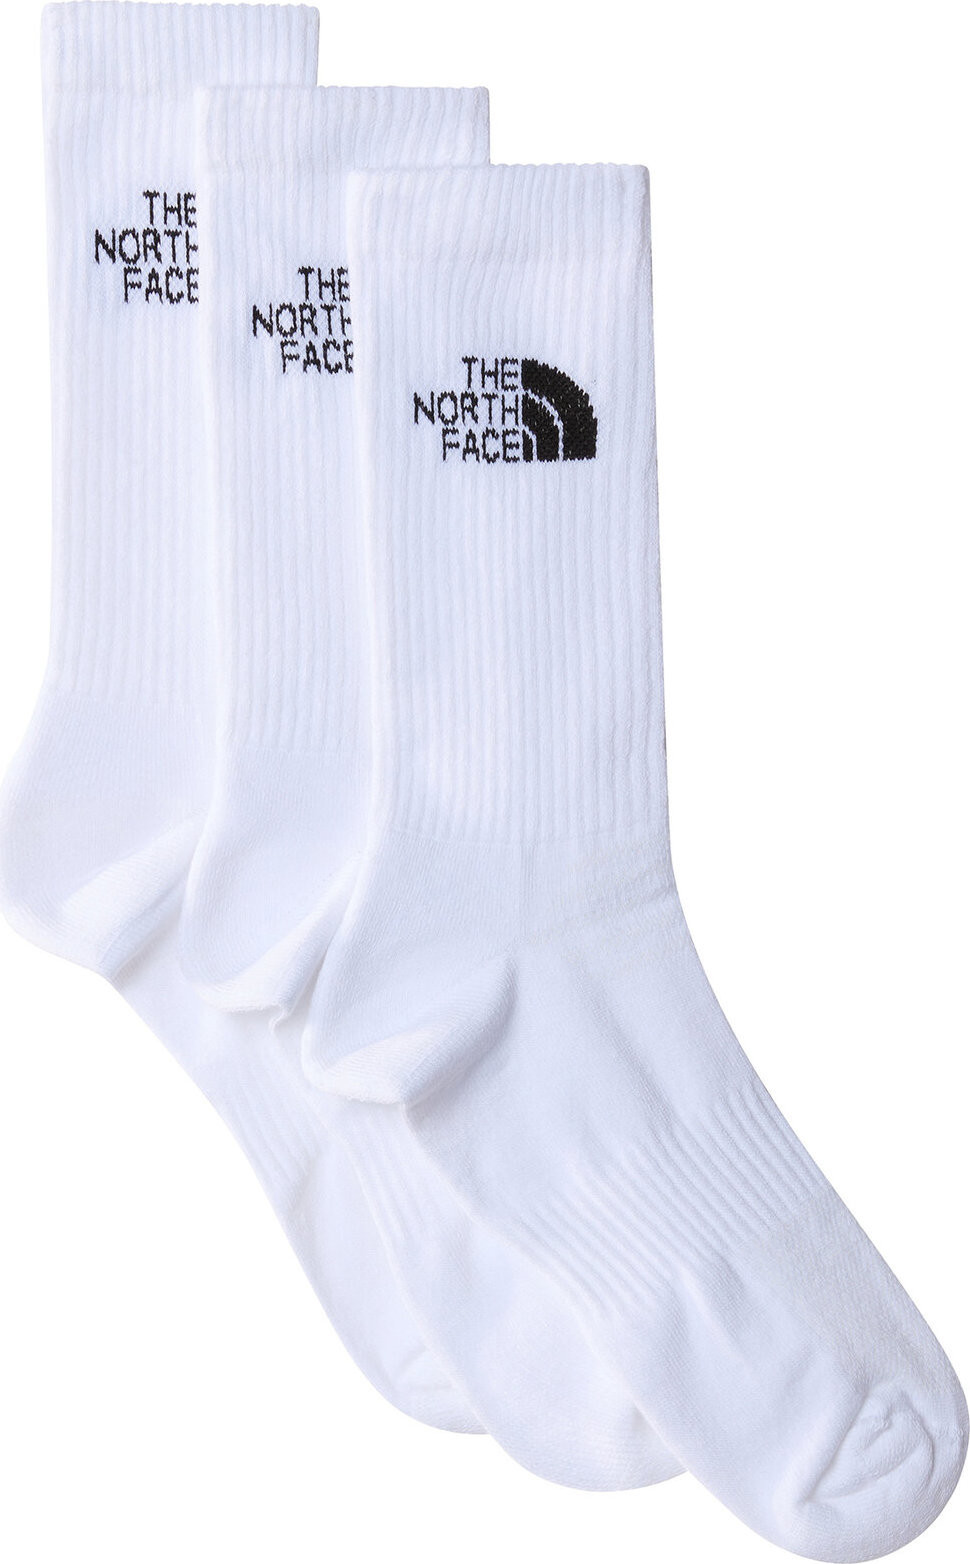 Sada 3 párů pánských vysokých ponožek The North Face NF0A882HFN41 Tnf White